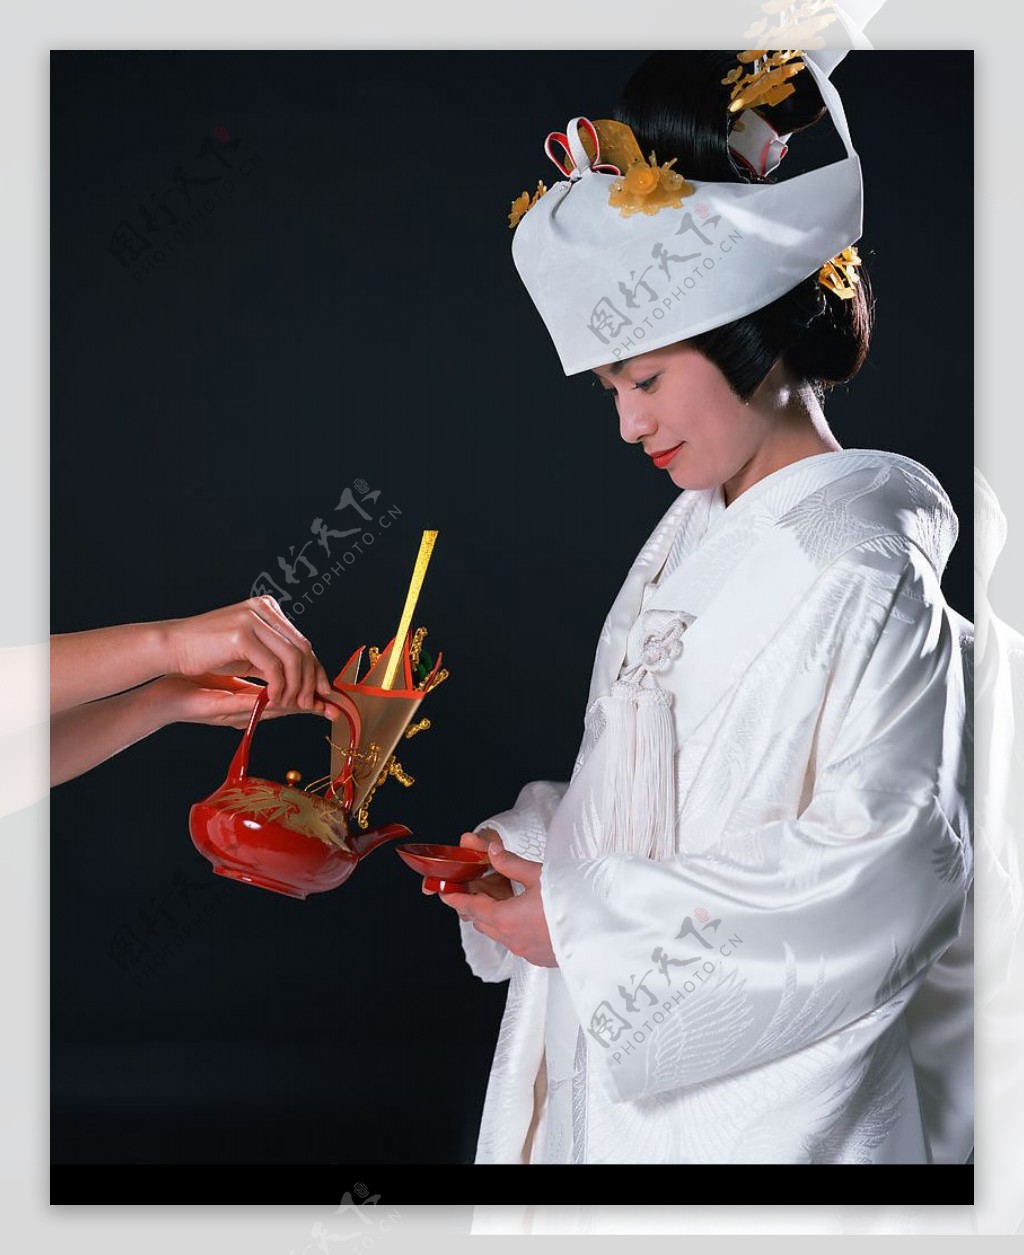 日本新娘图片